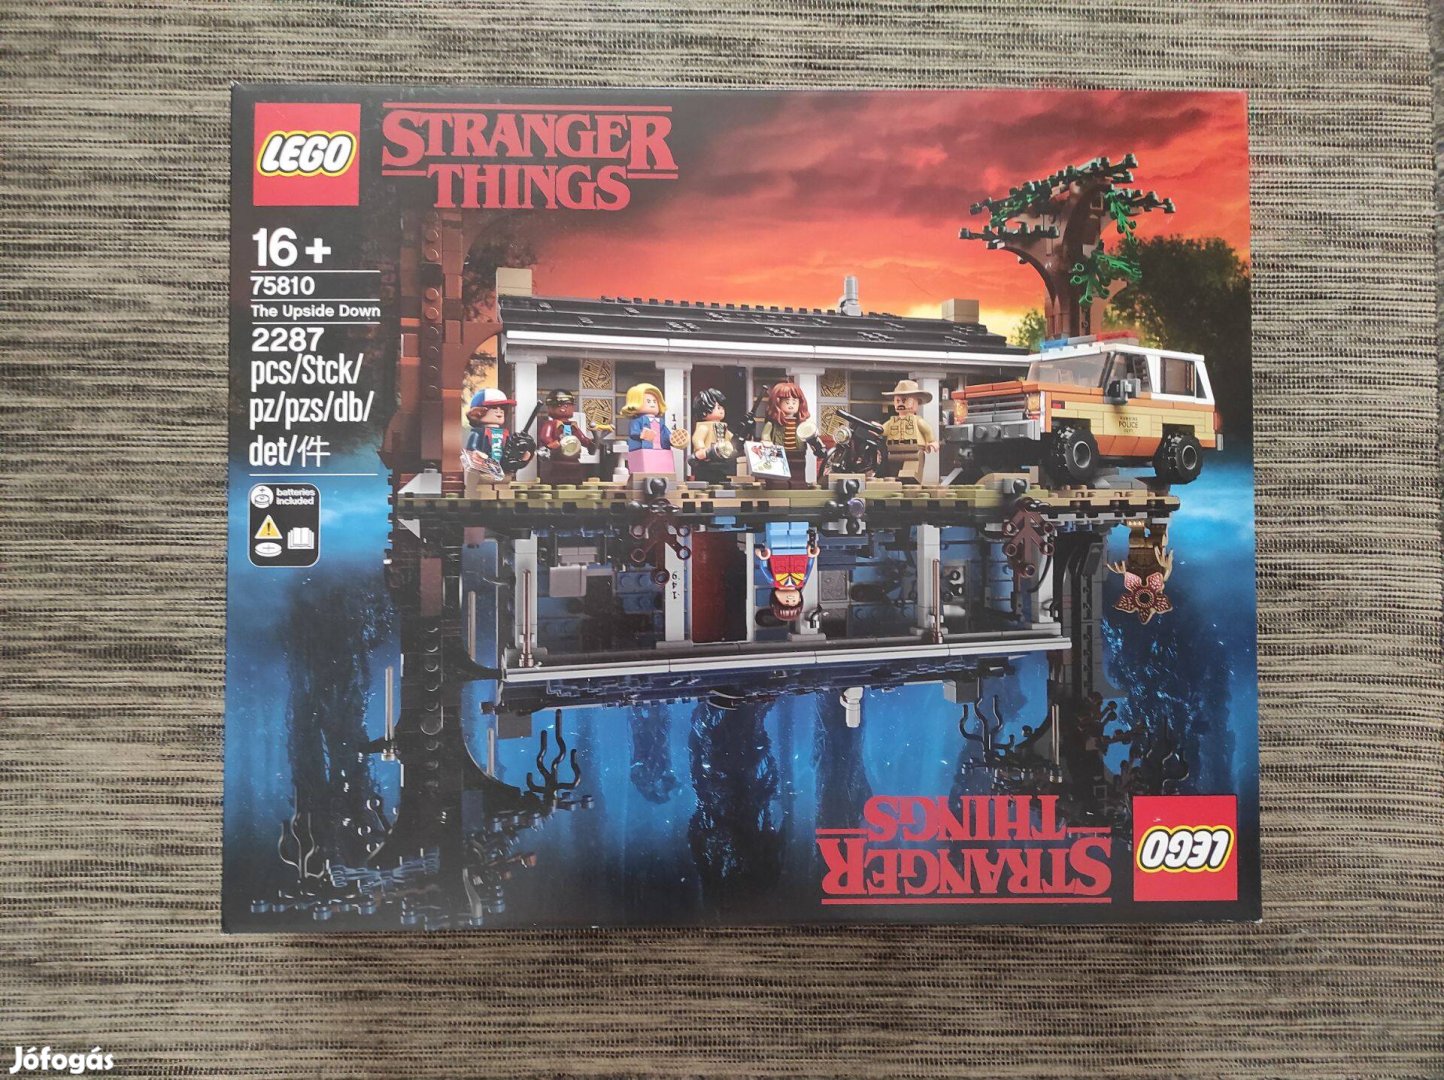 LEGO 75810 Stranger Things Upside Down